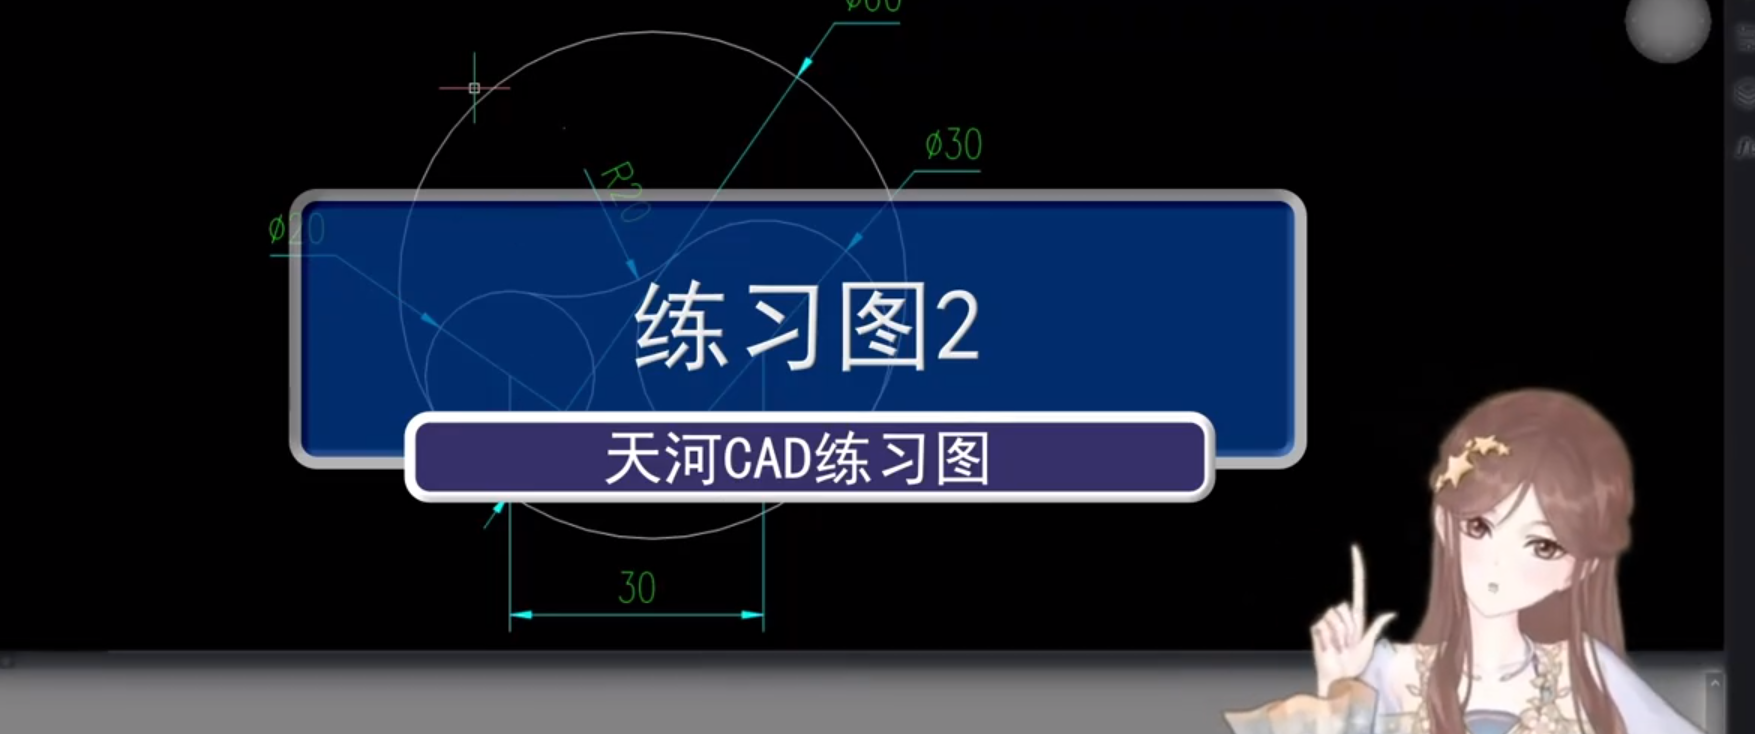 【CAD软件】练习图2——天河CAD练习图